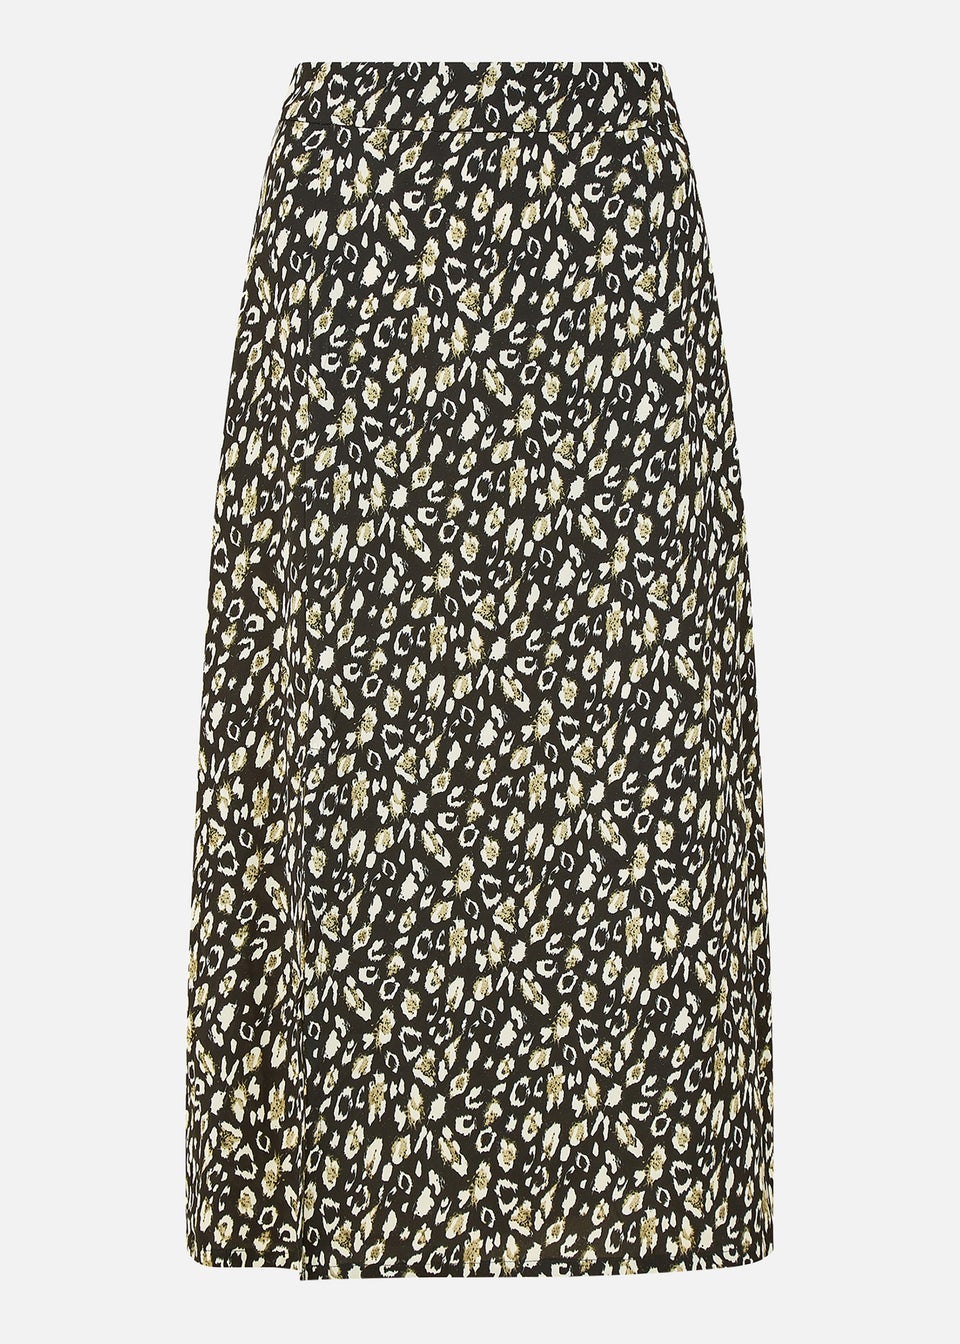 Yumi Black Leopard Print Midi Skirt